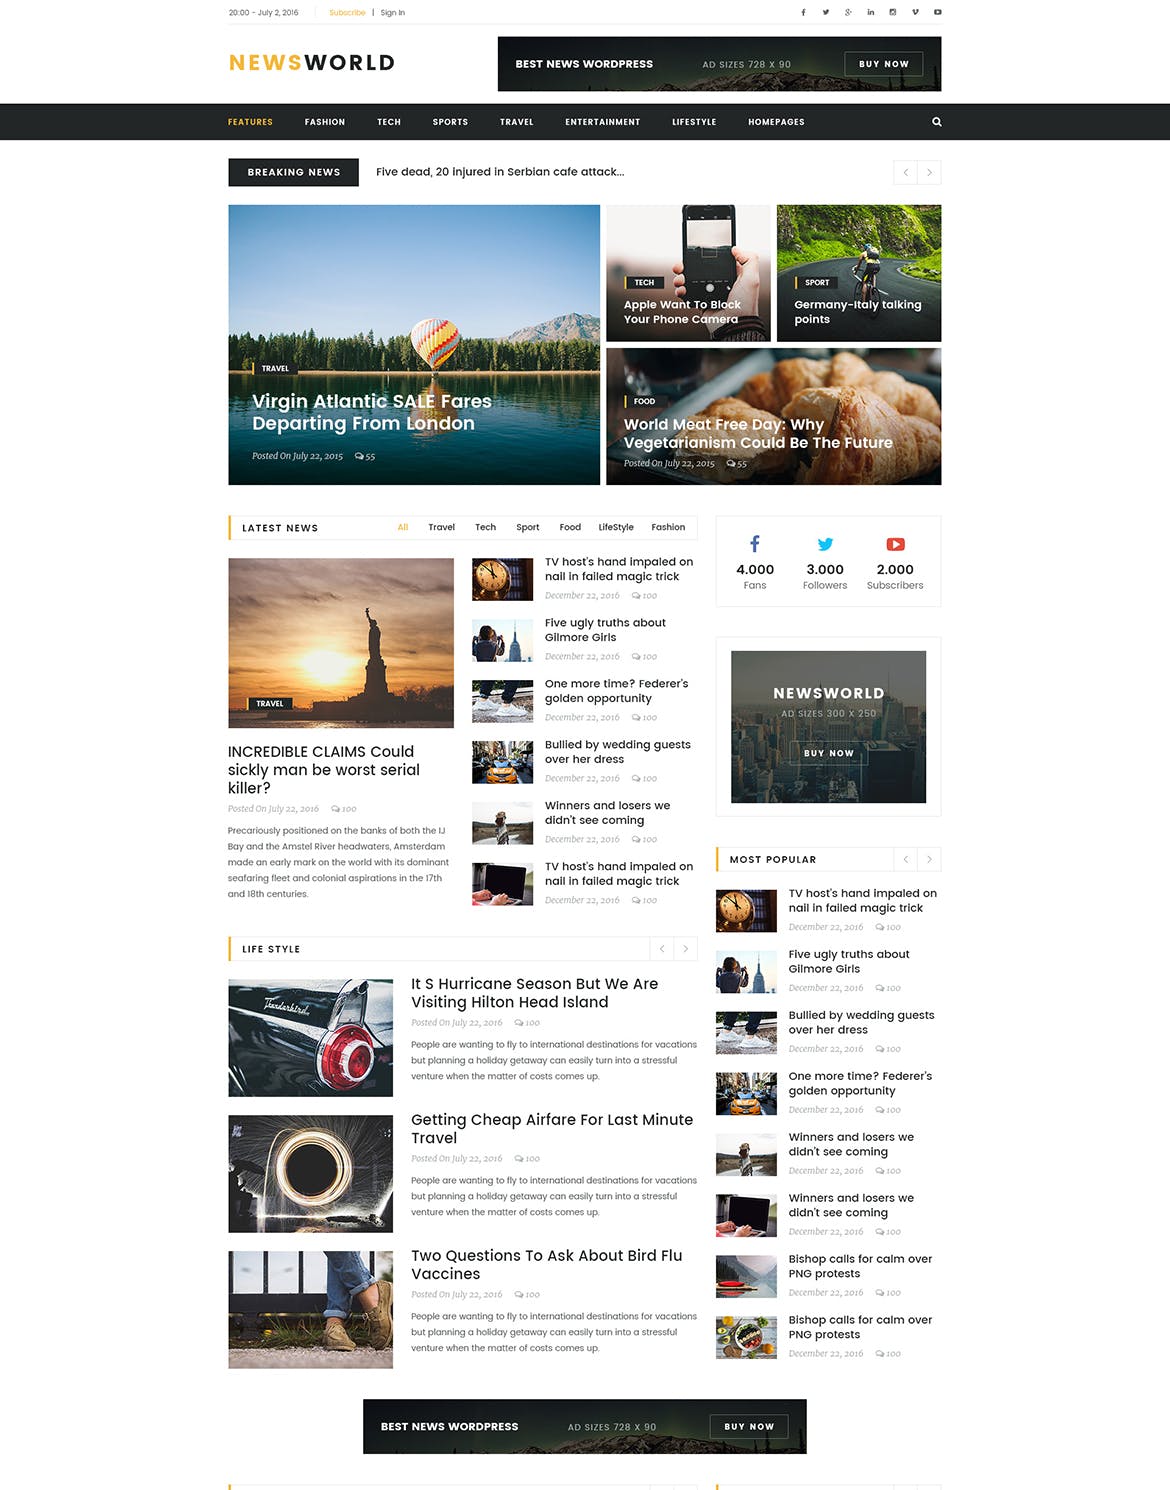 新闻资讯杂志类网站设计HTML模板第一素材精选 Newsworld | Mutil-Concept Magazine HTML5 Template插图(3)